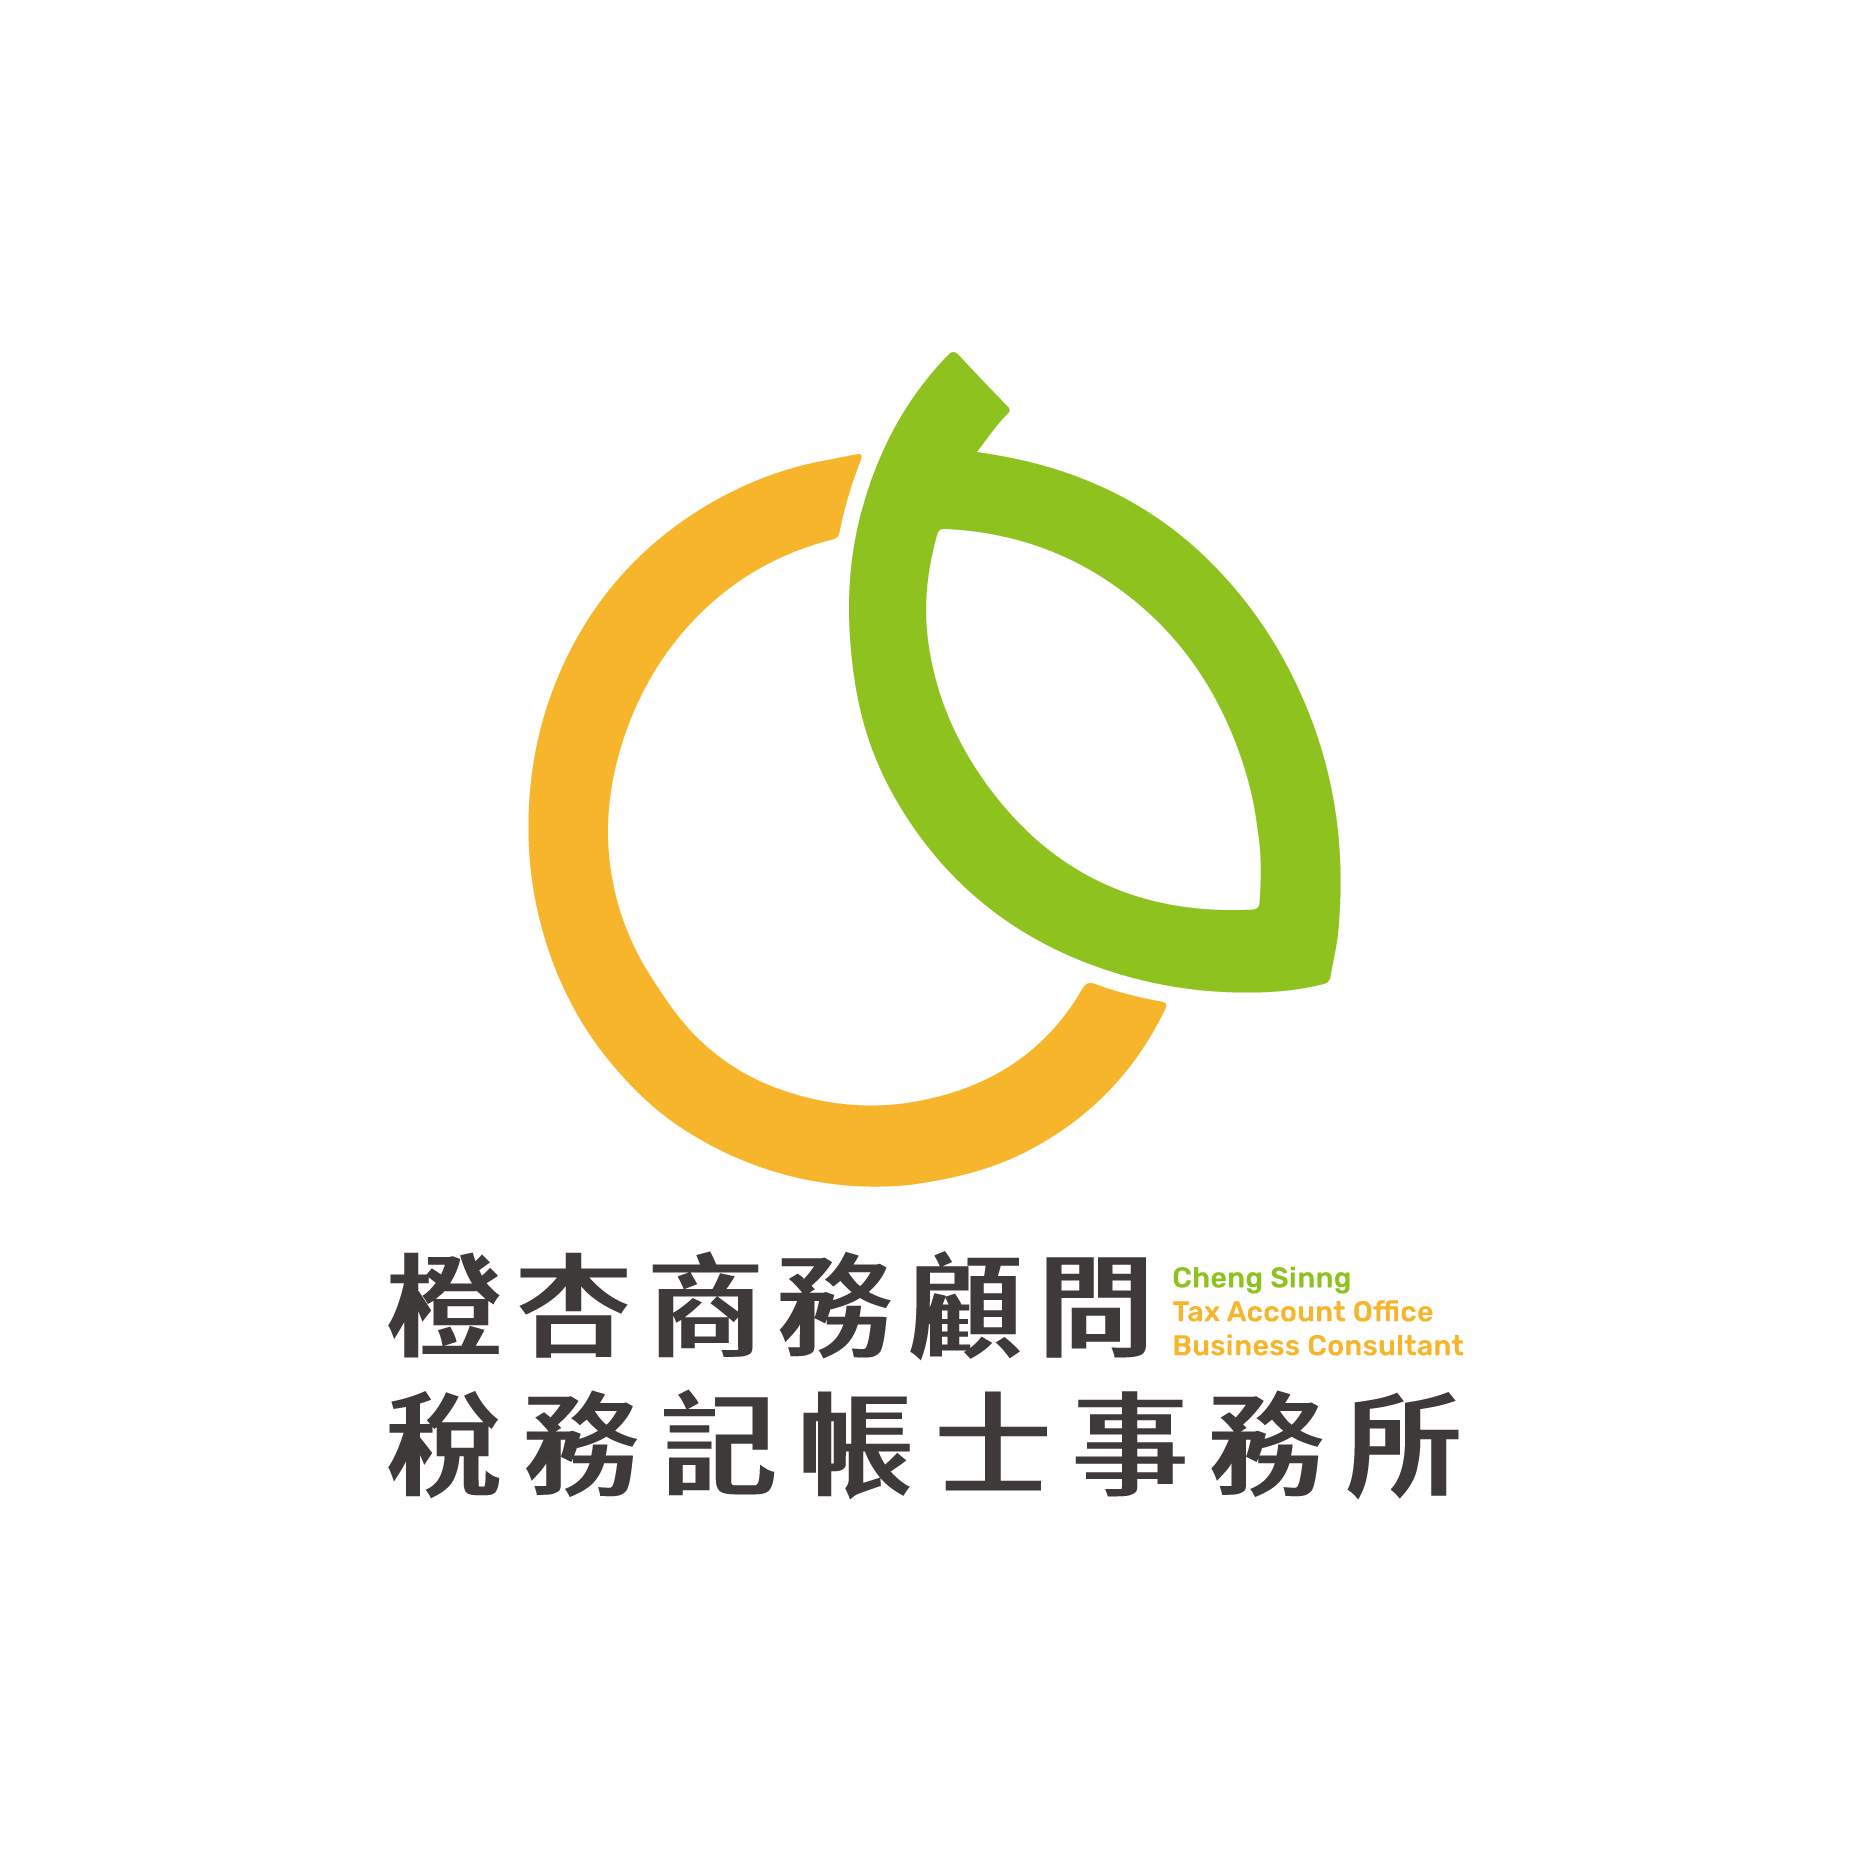 橙杏記帳士事務所Logo